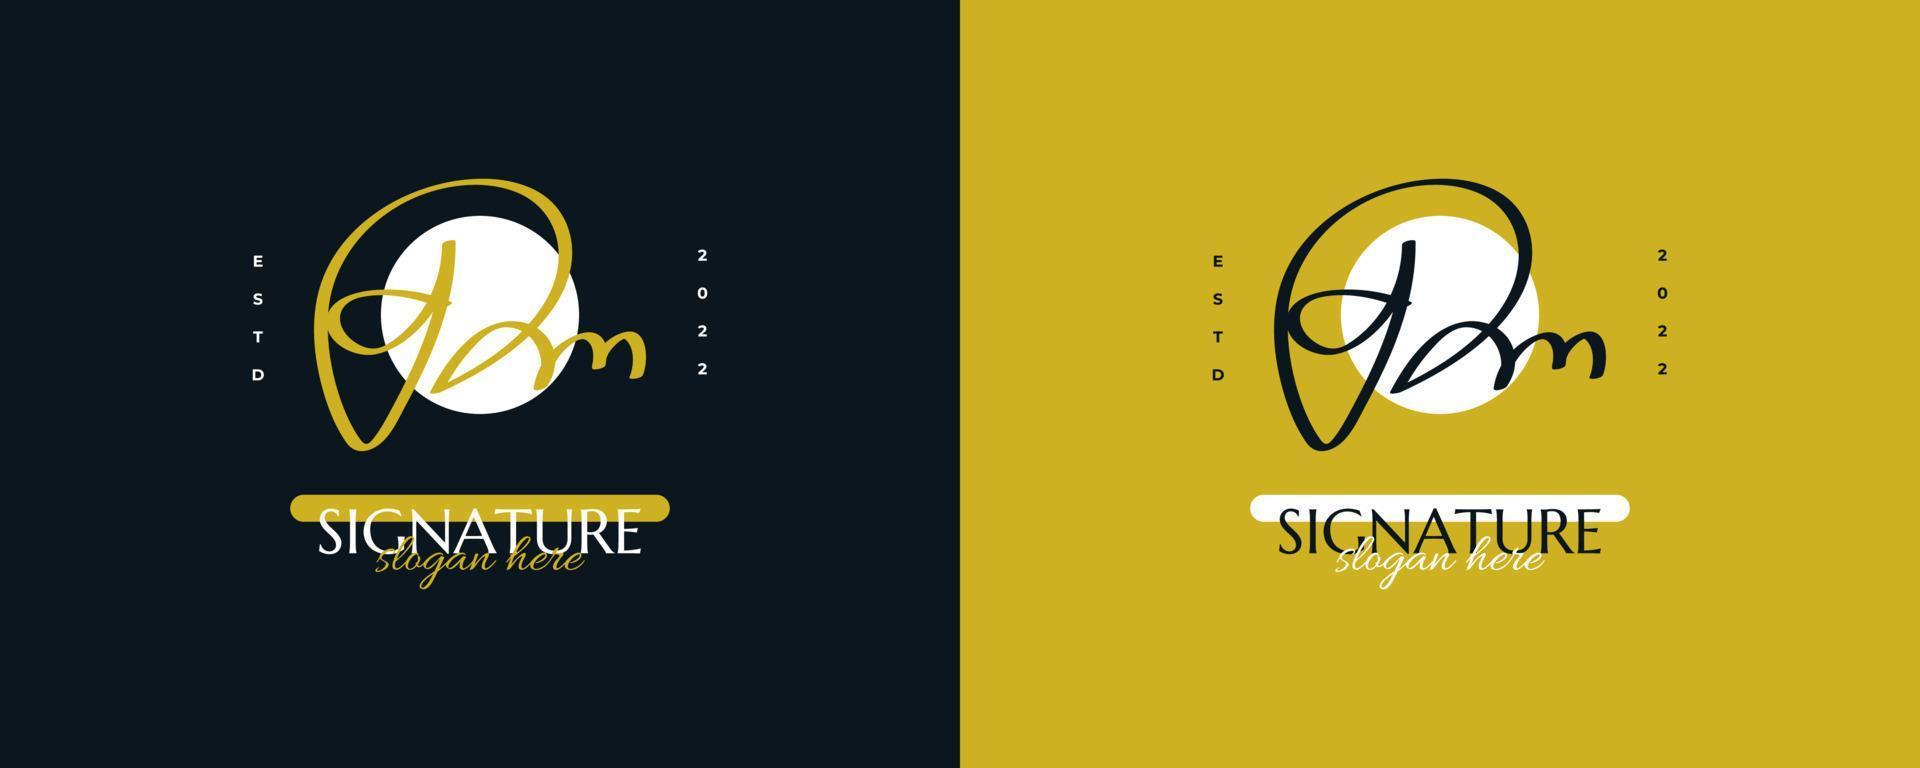 diseño inicial del logotipo d y m con un estilo de escritura elegante y minimalista. logotipo o símbolo de la firma dm para bodas, moda, joyería, boutique e identidad comercial vector